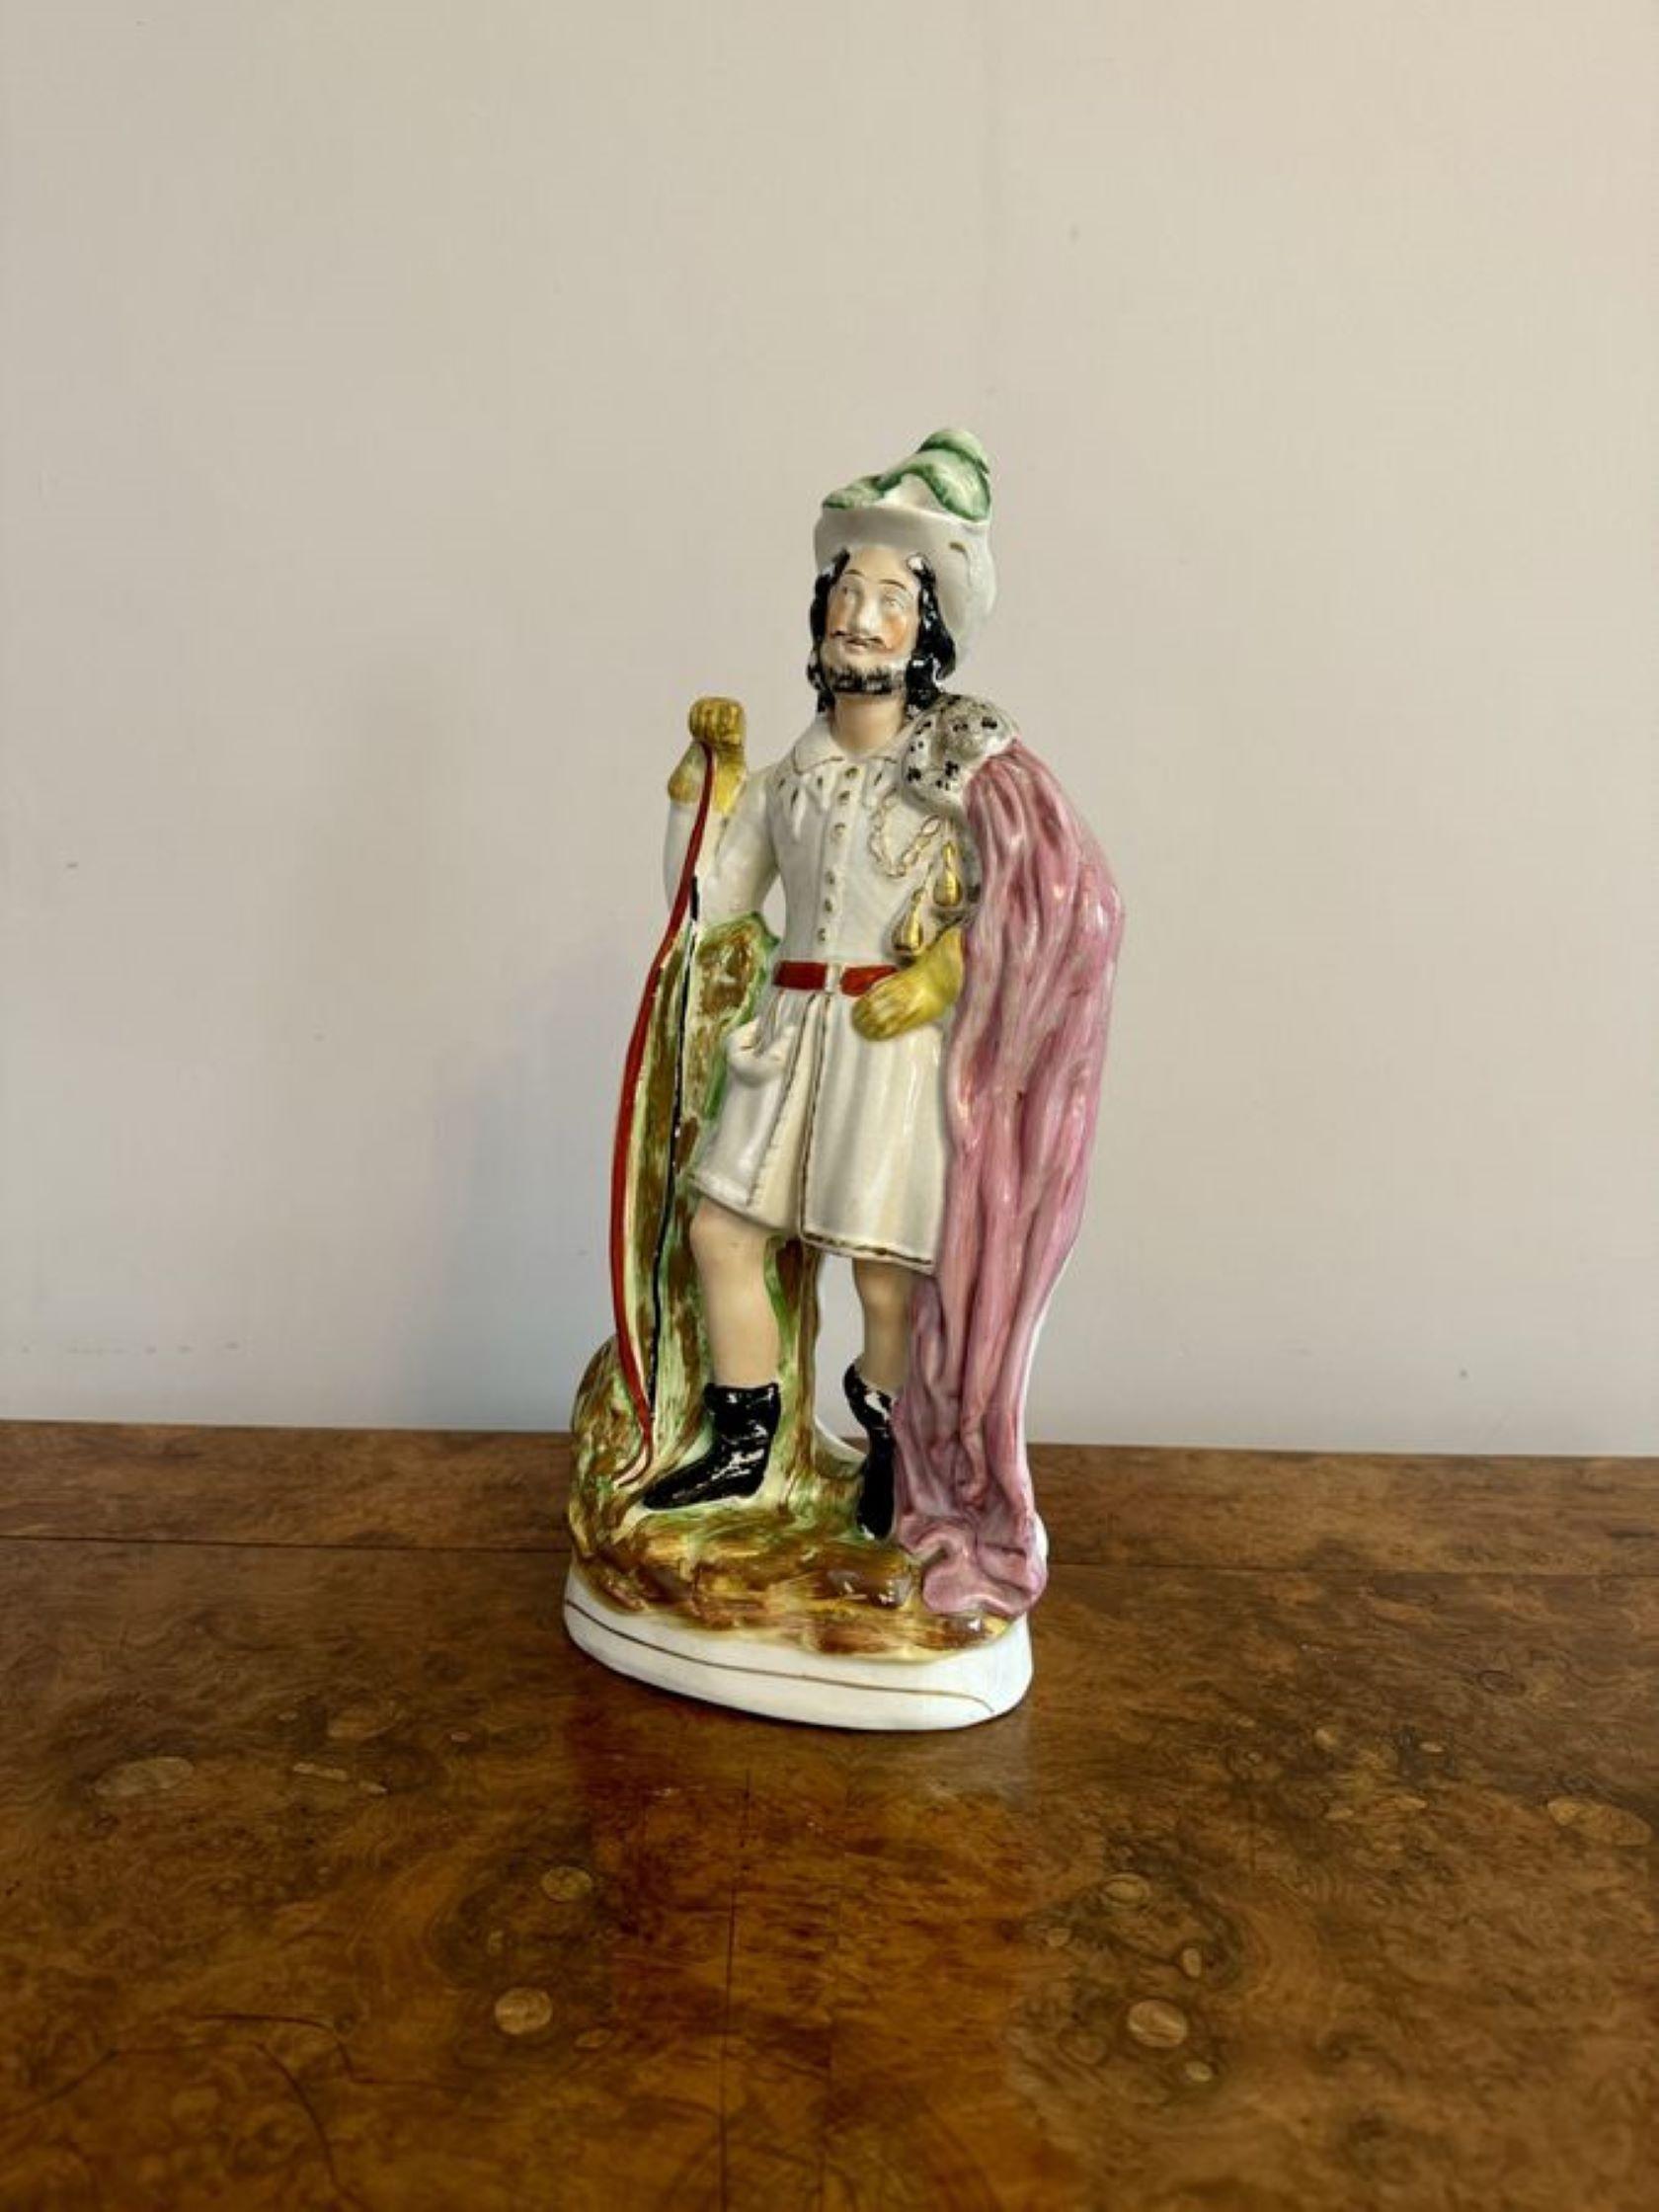 Grande figurine victorienne antique de Robin des Bois en Staffordshire, ayant une qualité grande figurine antique en Staffordshire de Robin des Bois debout avec un arc à son côté, peint à la main dans de merveilleuses couleurs rose, vert, clac,